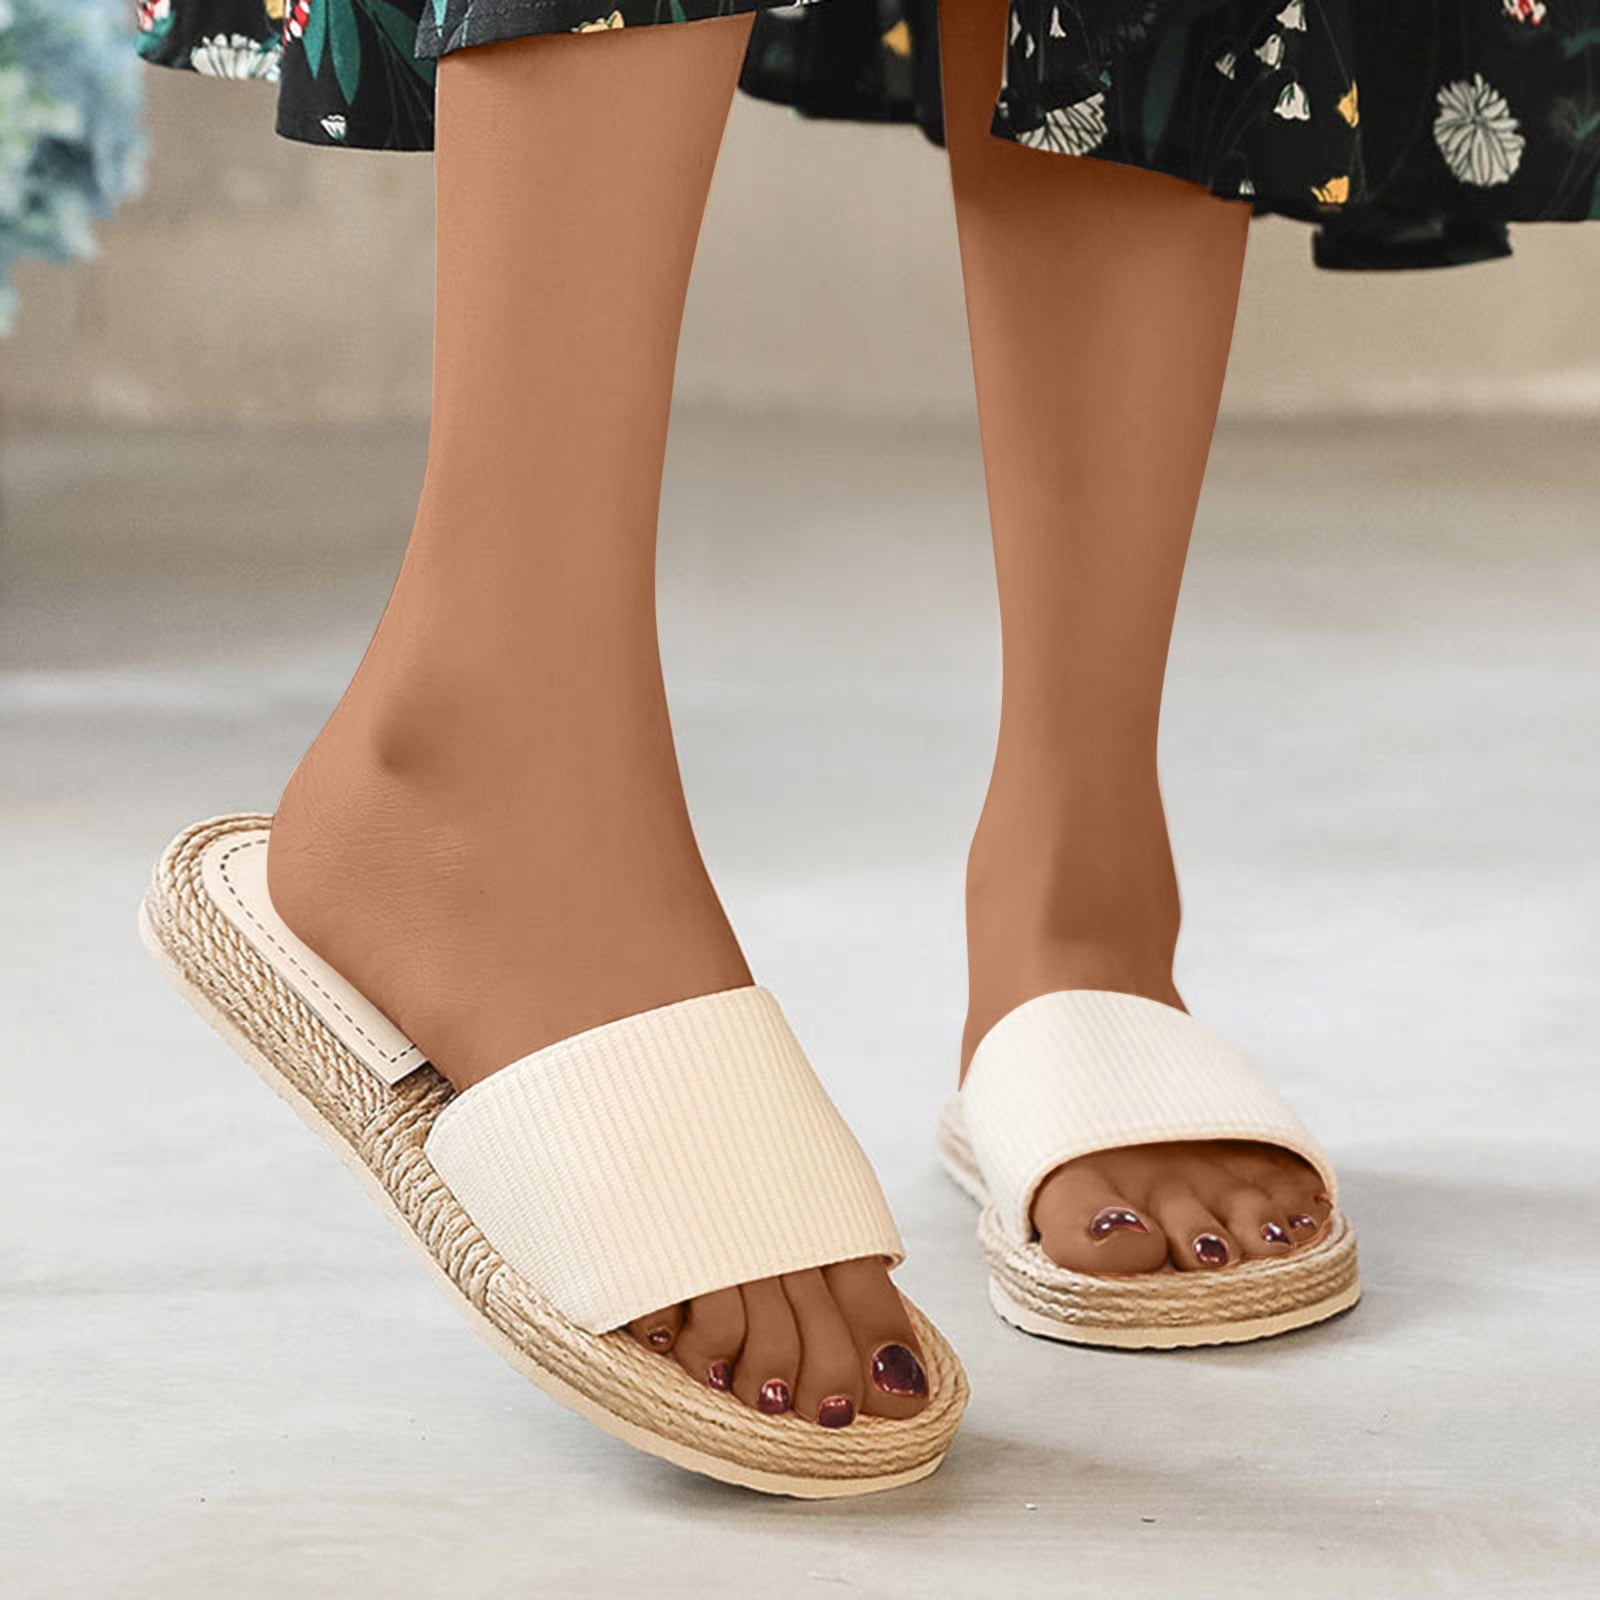 Cheap Women Flat Sandals Flip Flops Summer Beach Wear shoes Home Casual  Simple Sandals | Joom